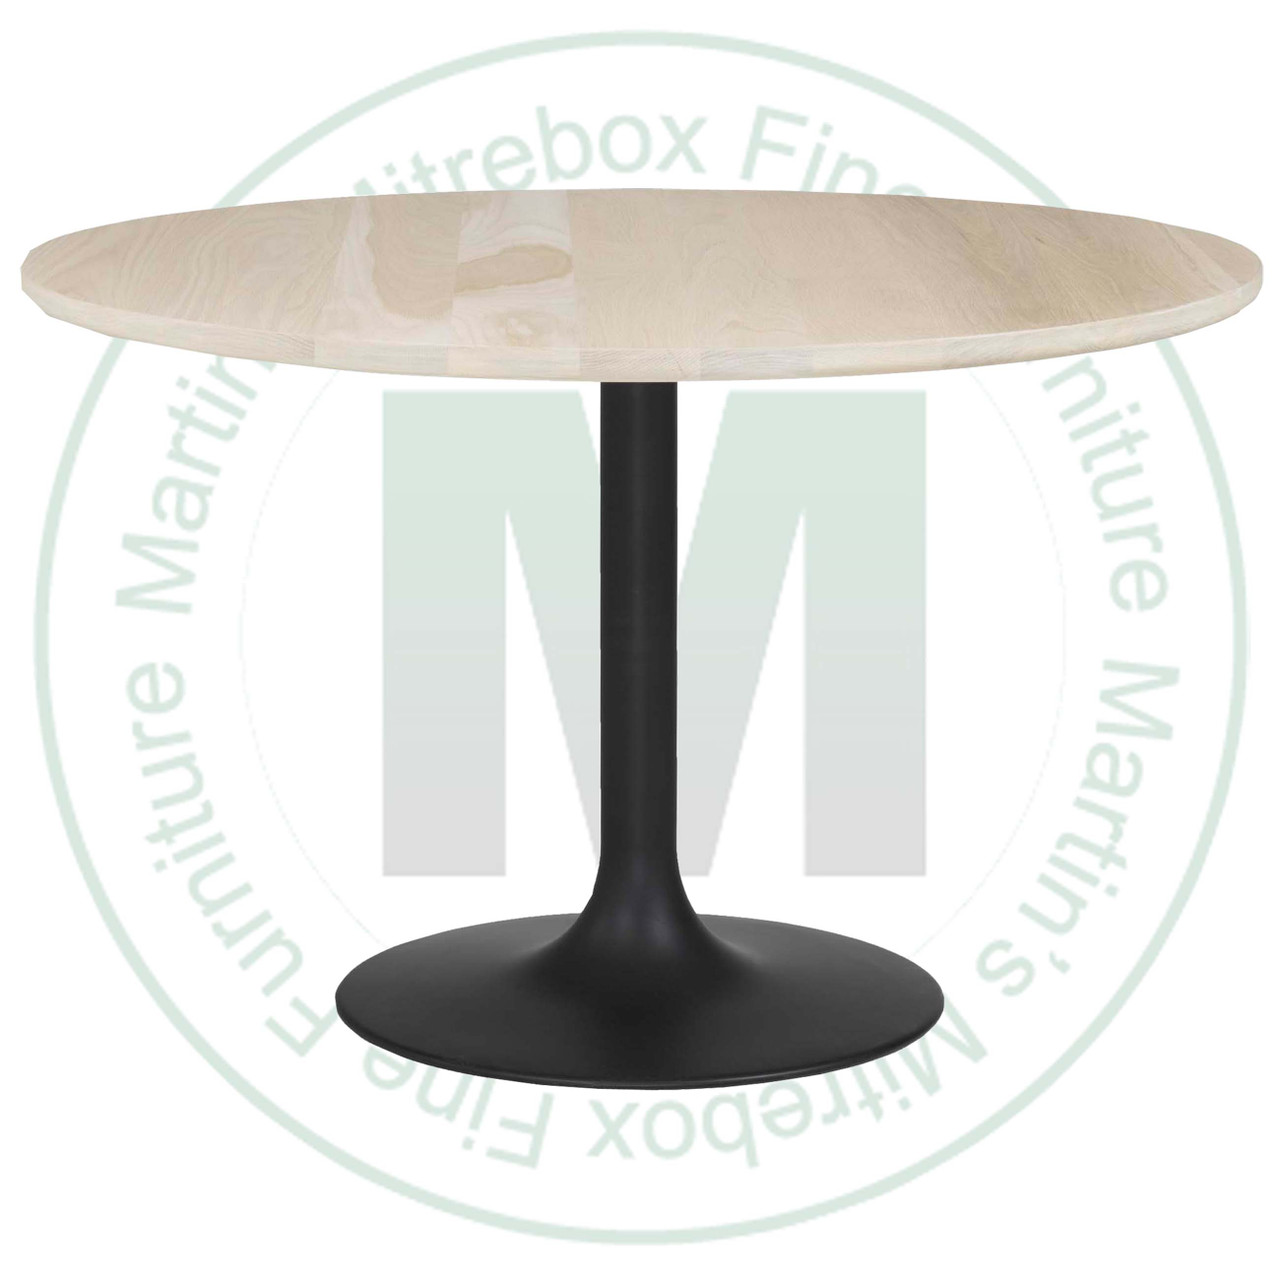 Maple Greta Single Pedestal Table 48''D x 48''W x 30''H